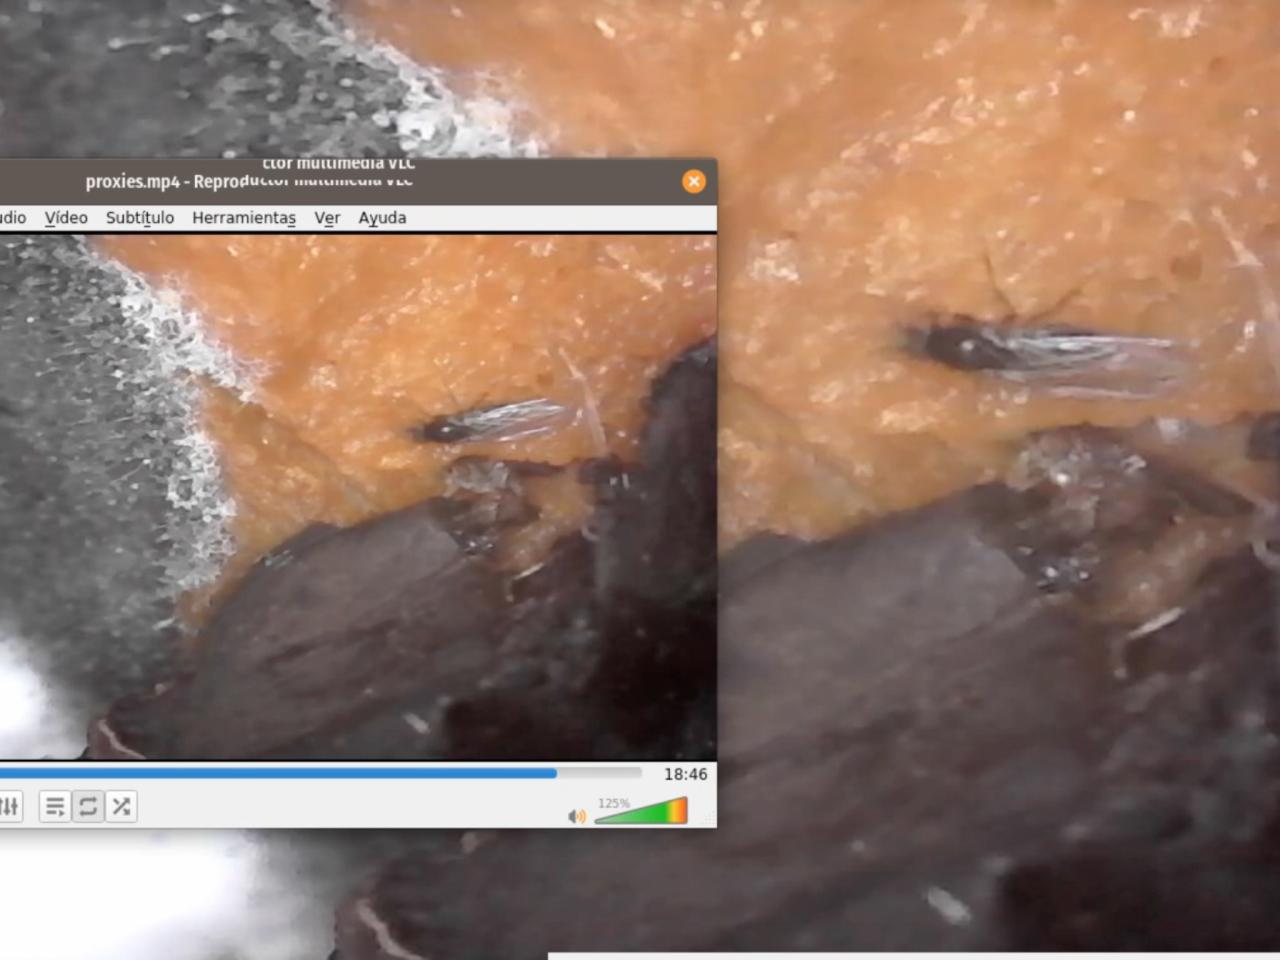 Registro de pantalla del registro video "Proxies", plano detalle de un elemento en descomposición